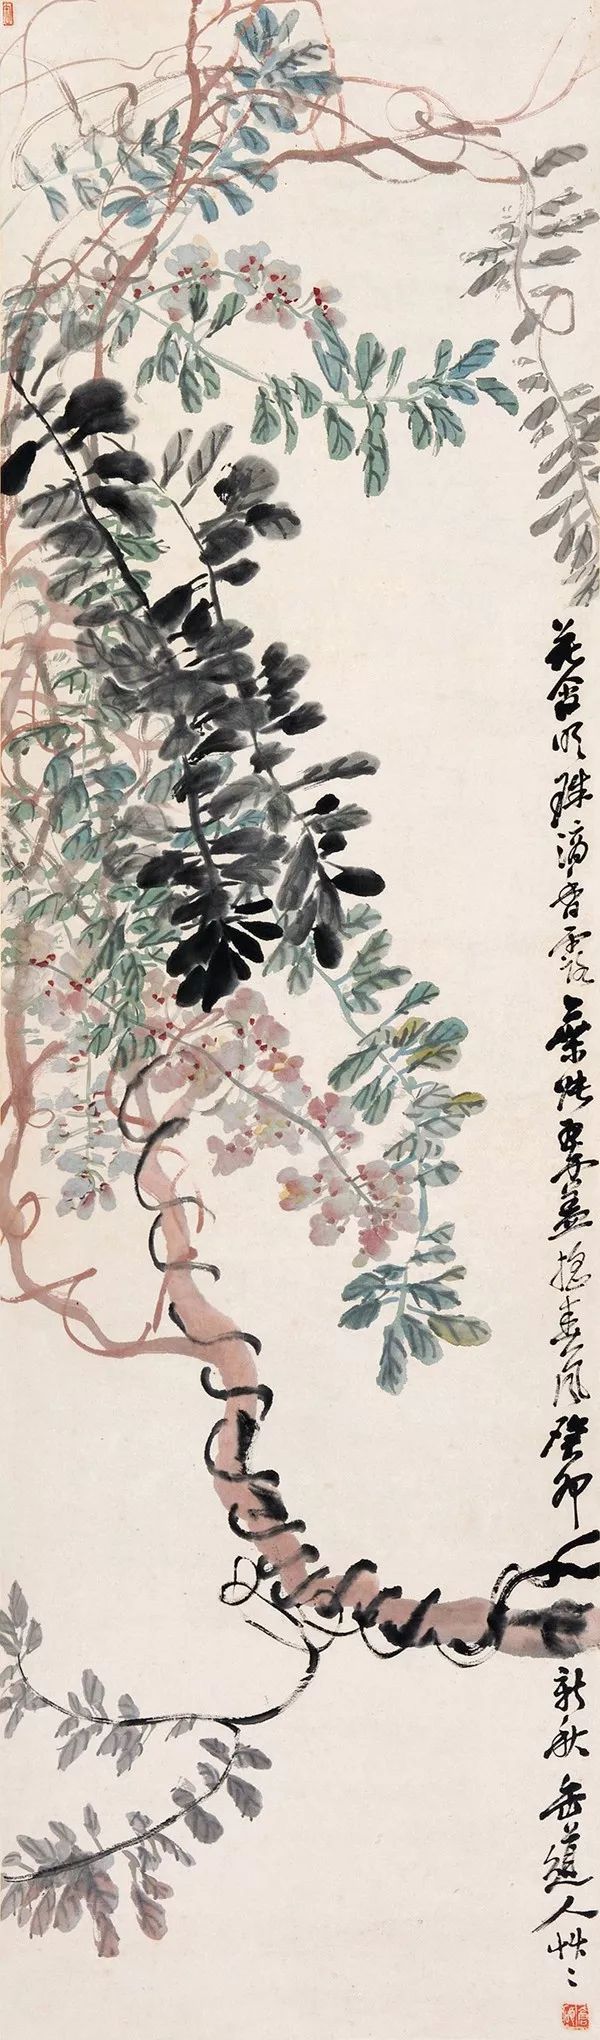 文人画最后的高峰海派大师吴昌硕的艺术世界